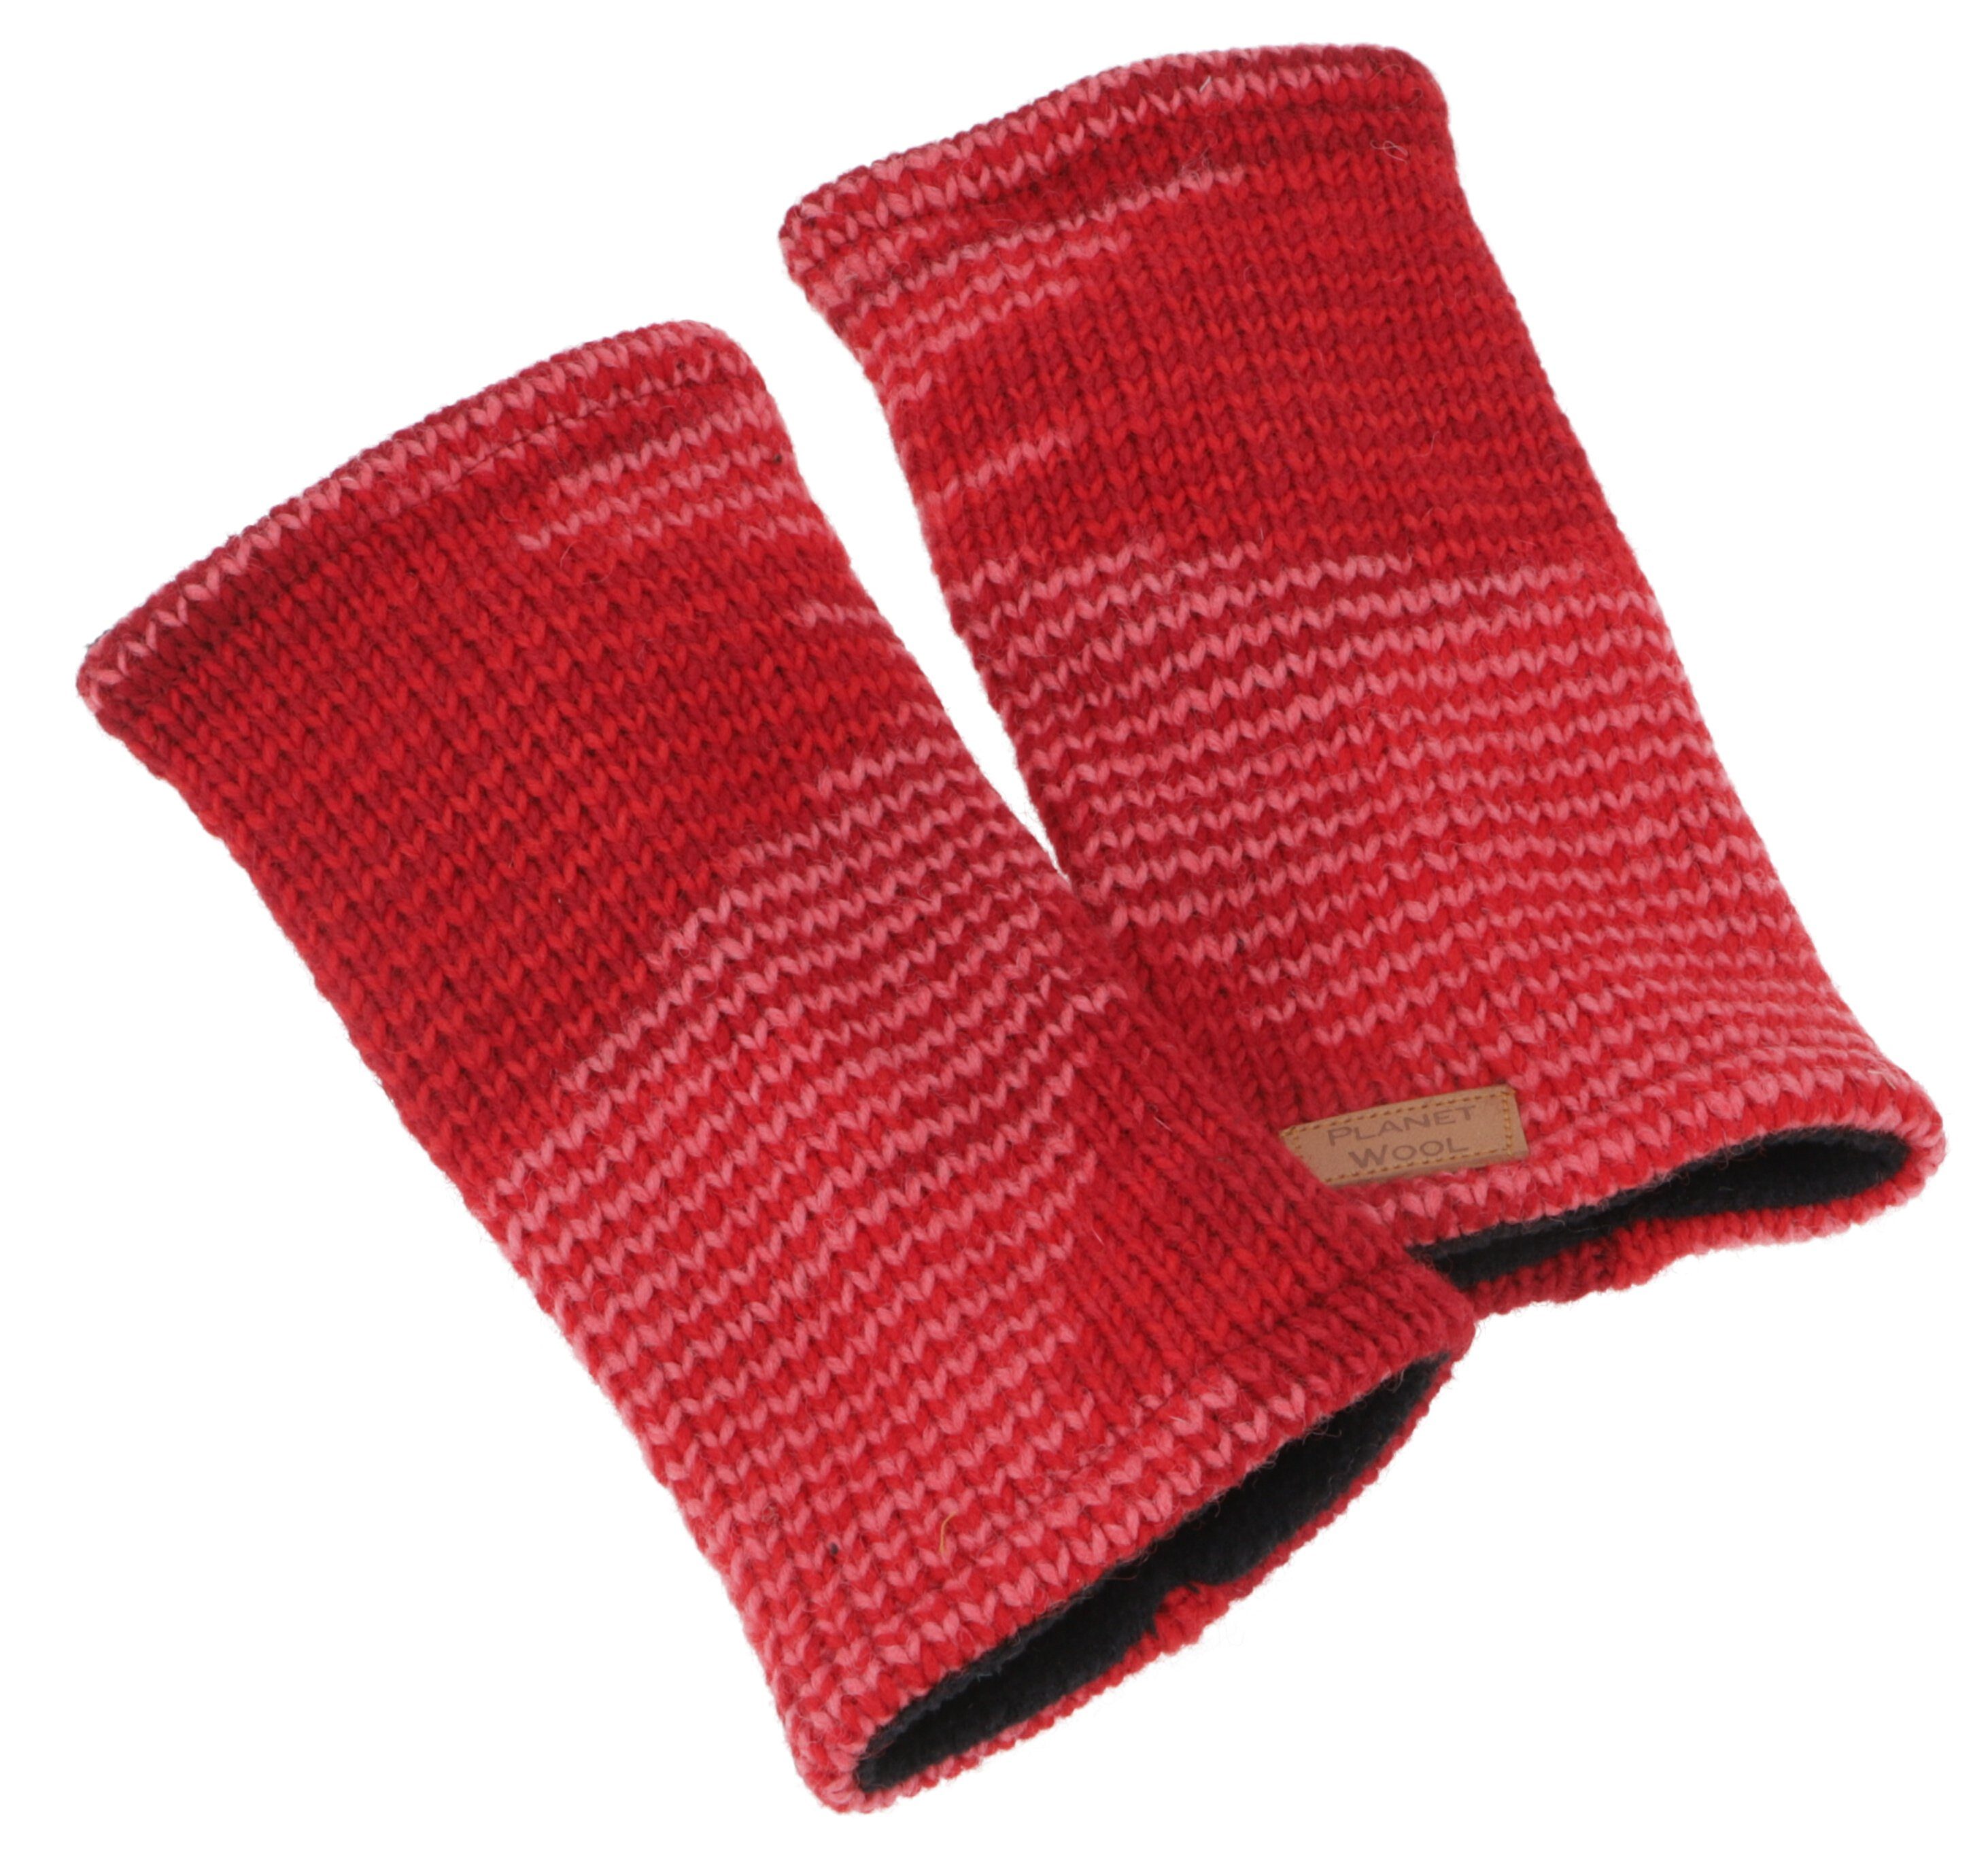 Guru-Shop Strickhandschuhe Handstulpen, hangestrickte Wollstulpen aus.. rot